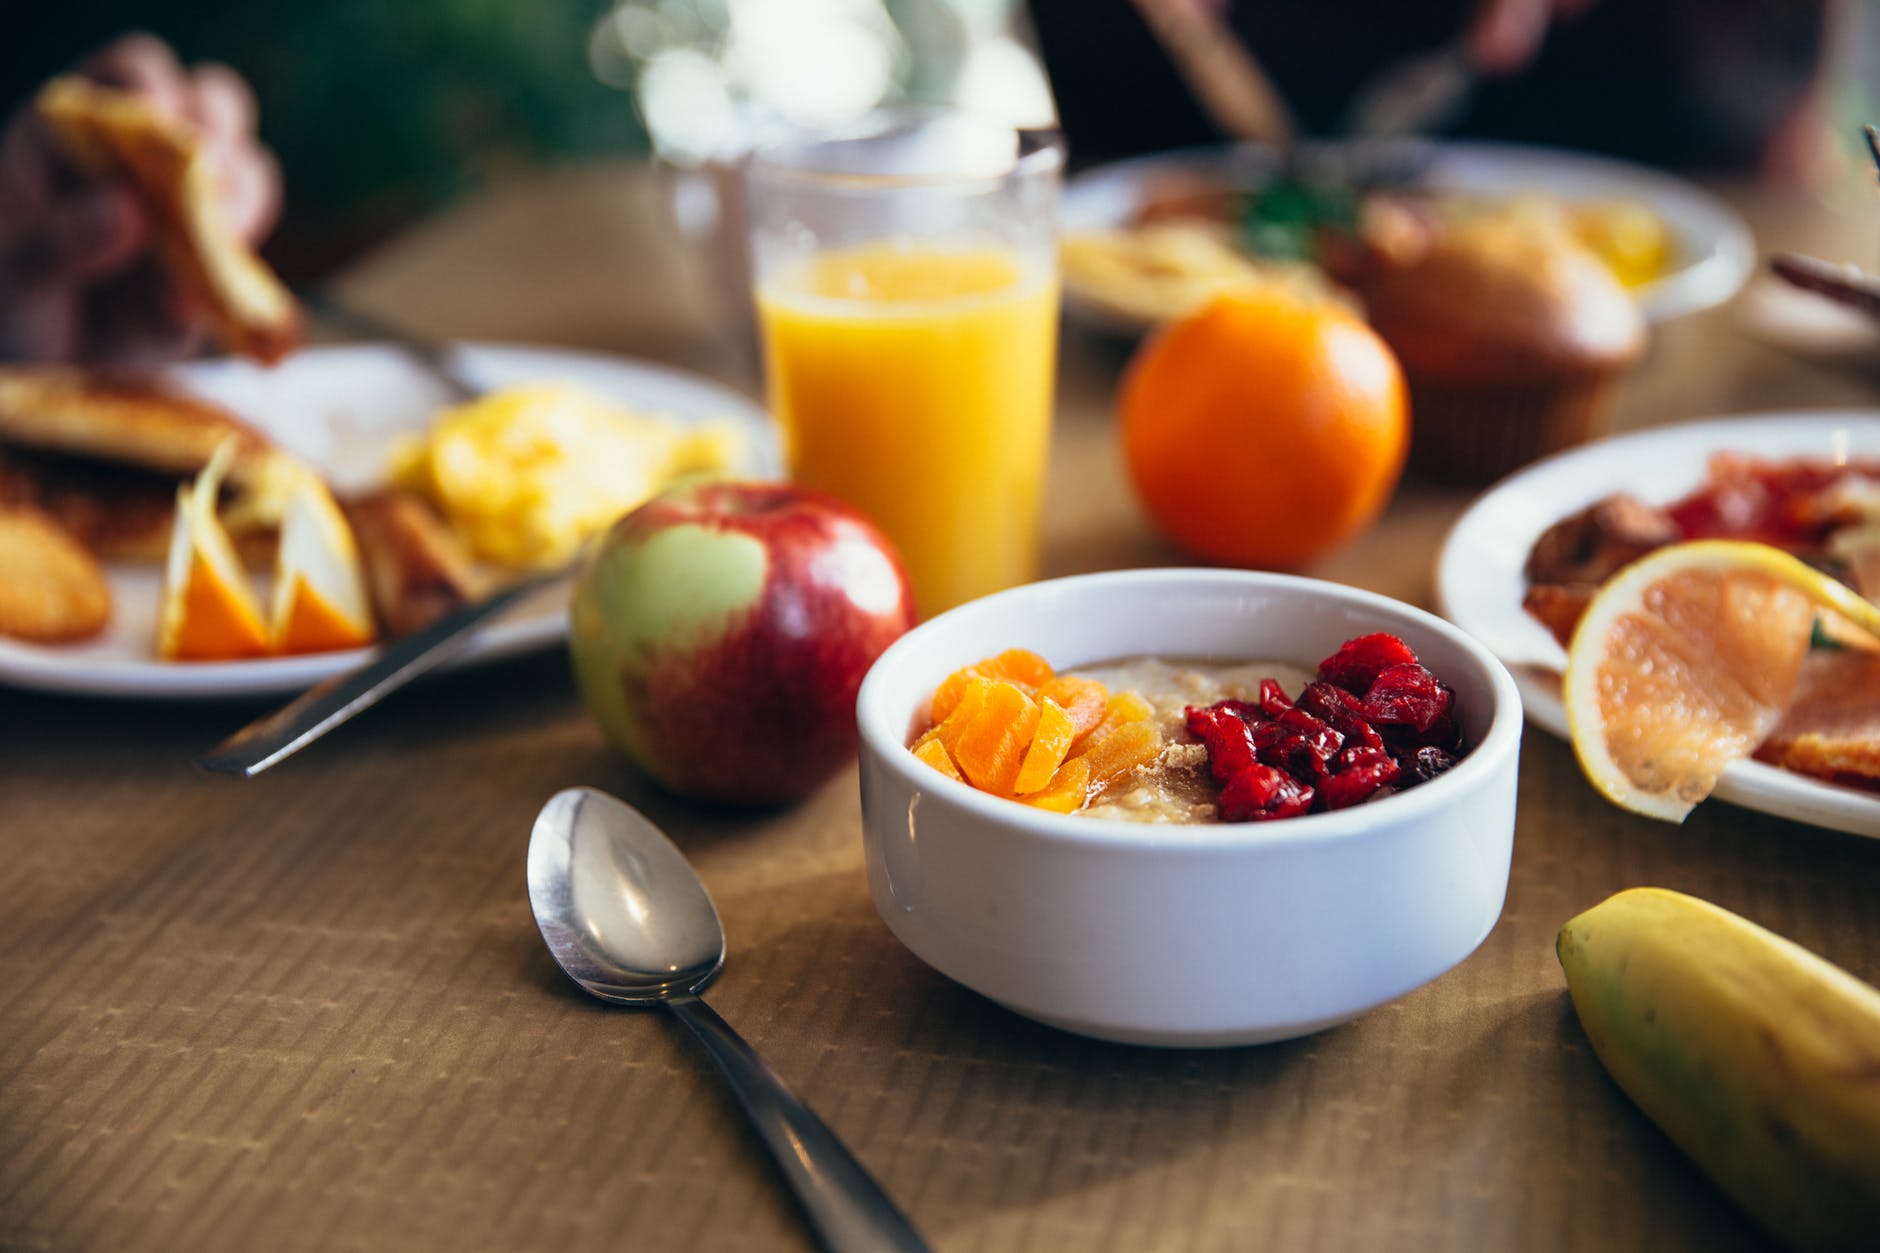 Confira agora quais as melhores opções de café da manhã para quem possui diabetes!